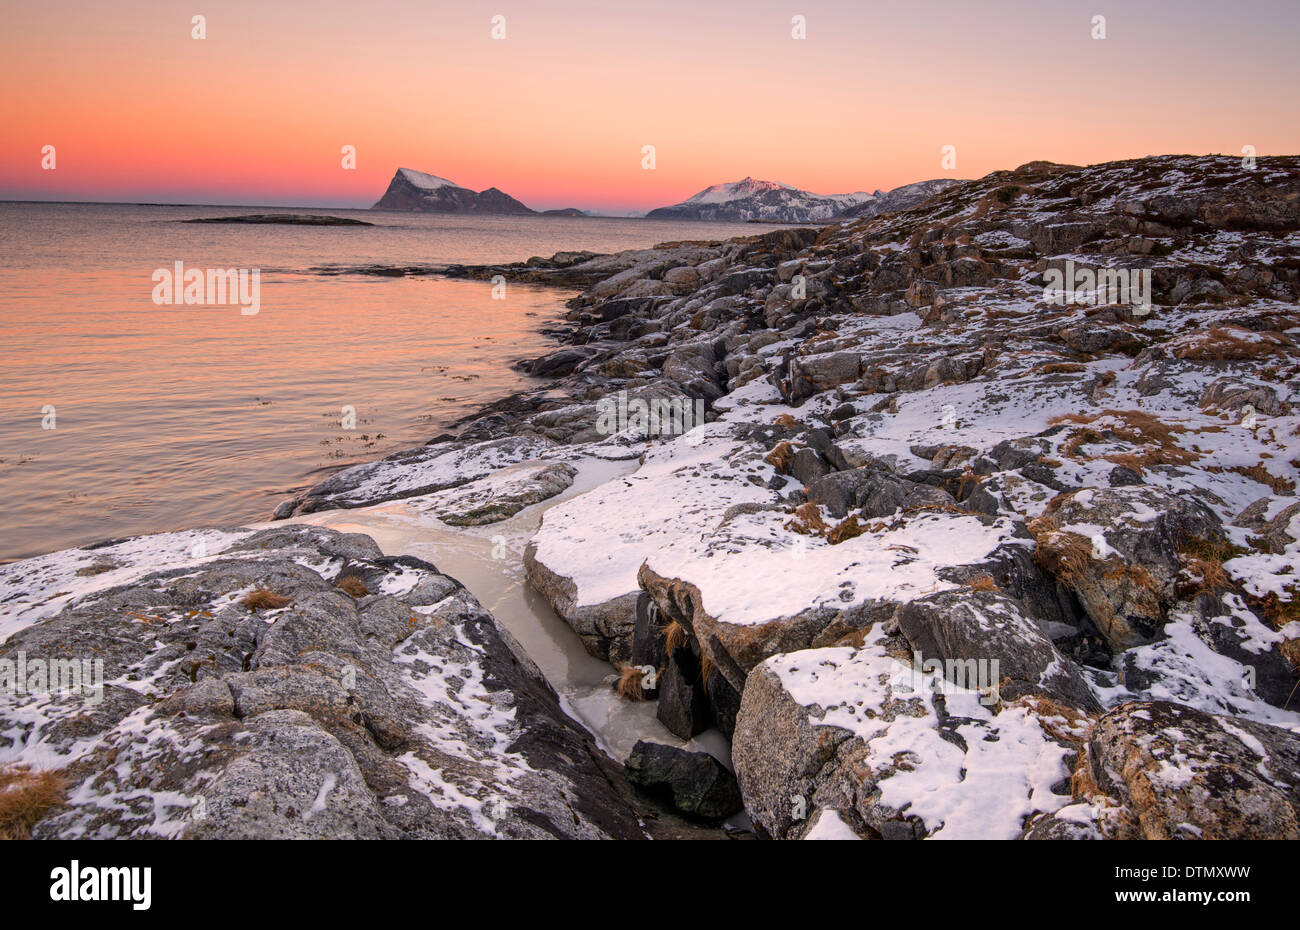 A view toward Haja from Sommaroy near Tromso, Norway Stock Photo